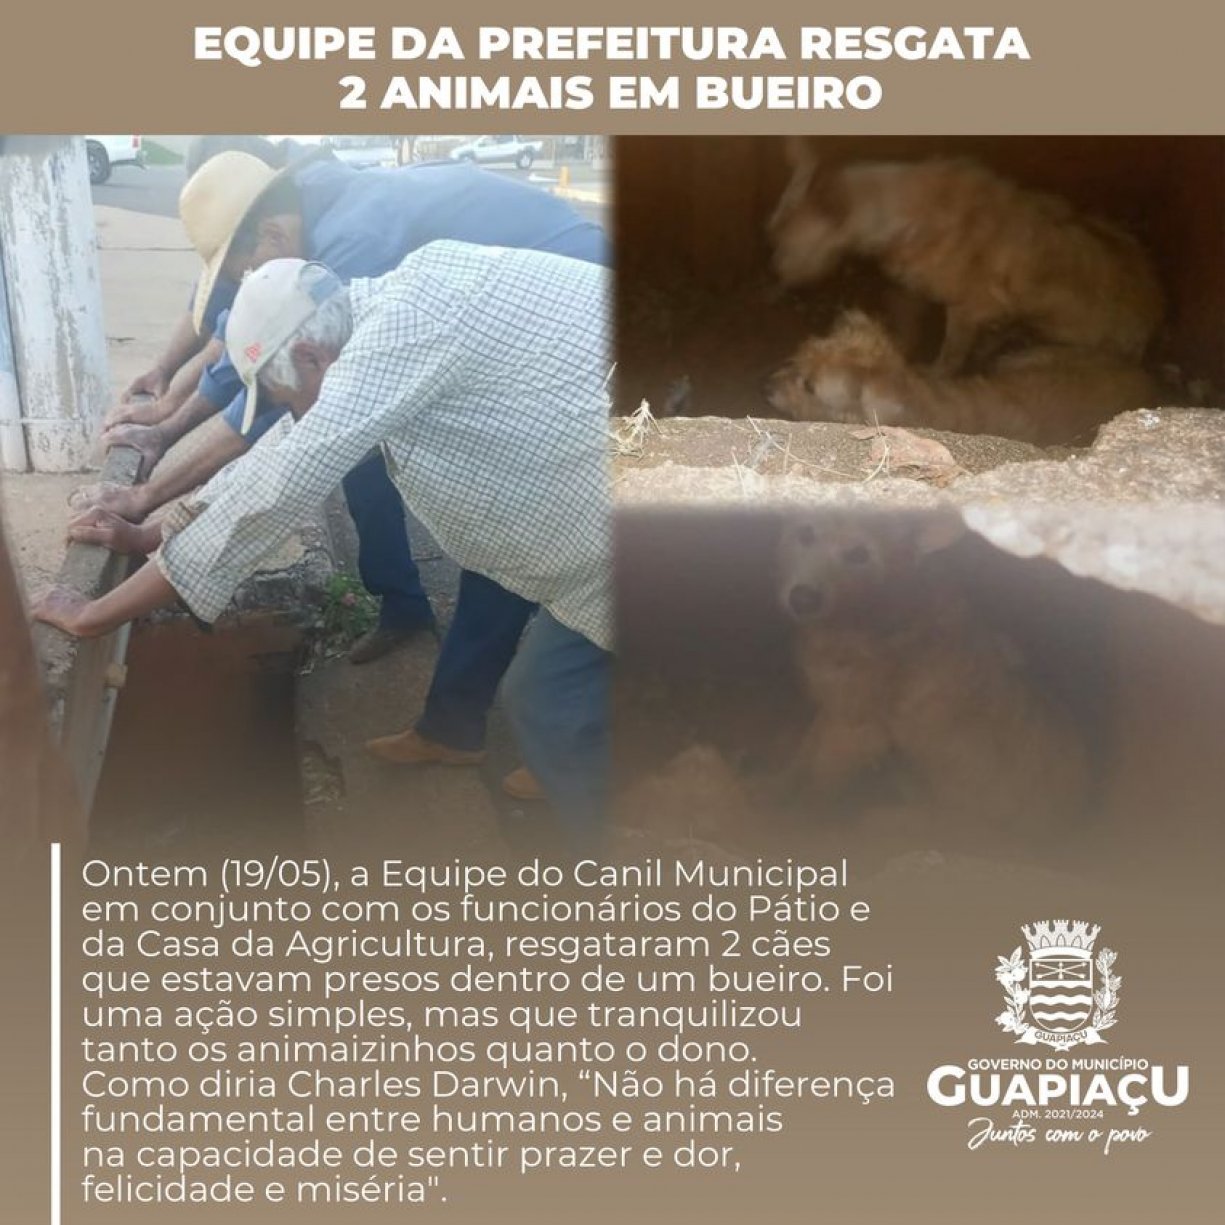 EQUIPE DA PREFEITURA RESGATA 2 ANIMAIS EM BUEIRO‼